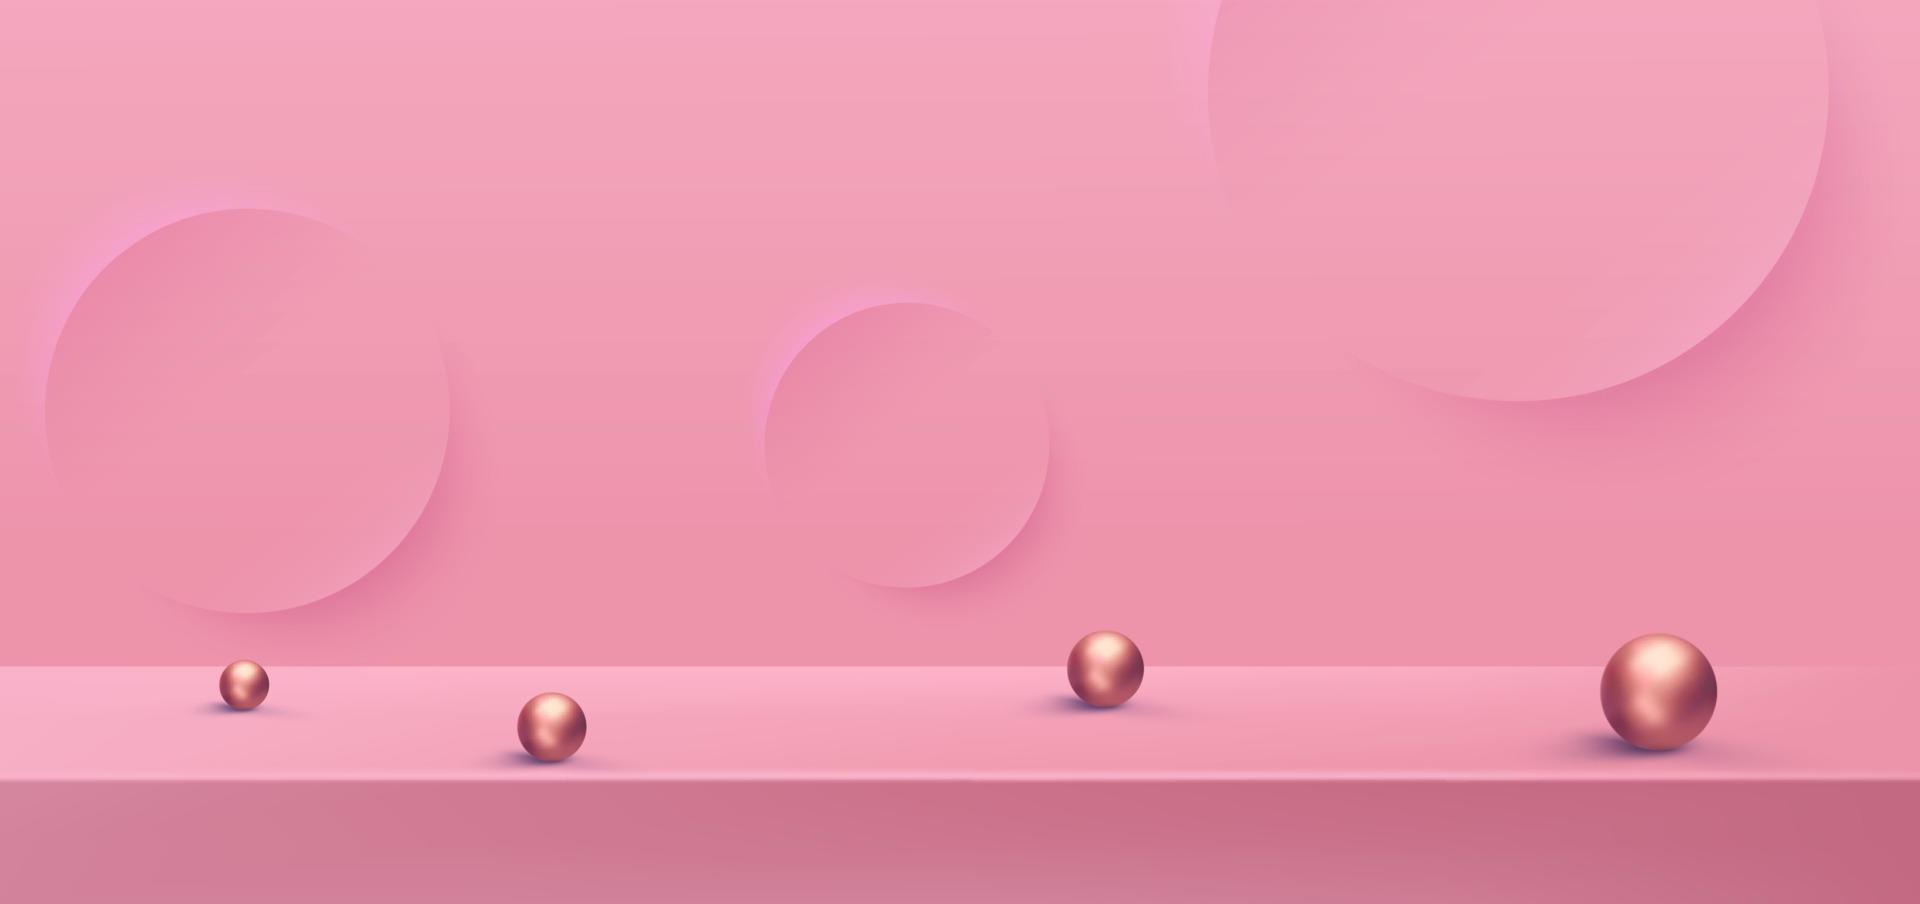 Concepto de vector de fondo de podio rosa 3d, adecuado para varios diseños de fondo, plantilla de San Valentín, pancarta, póster